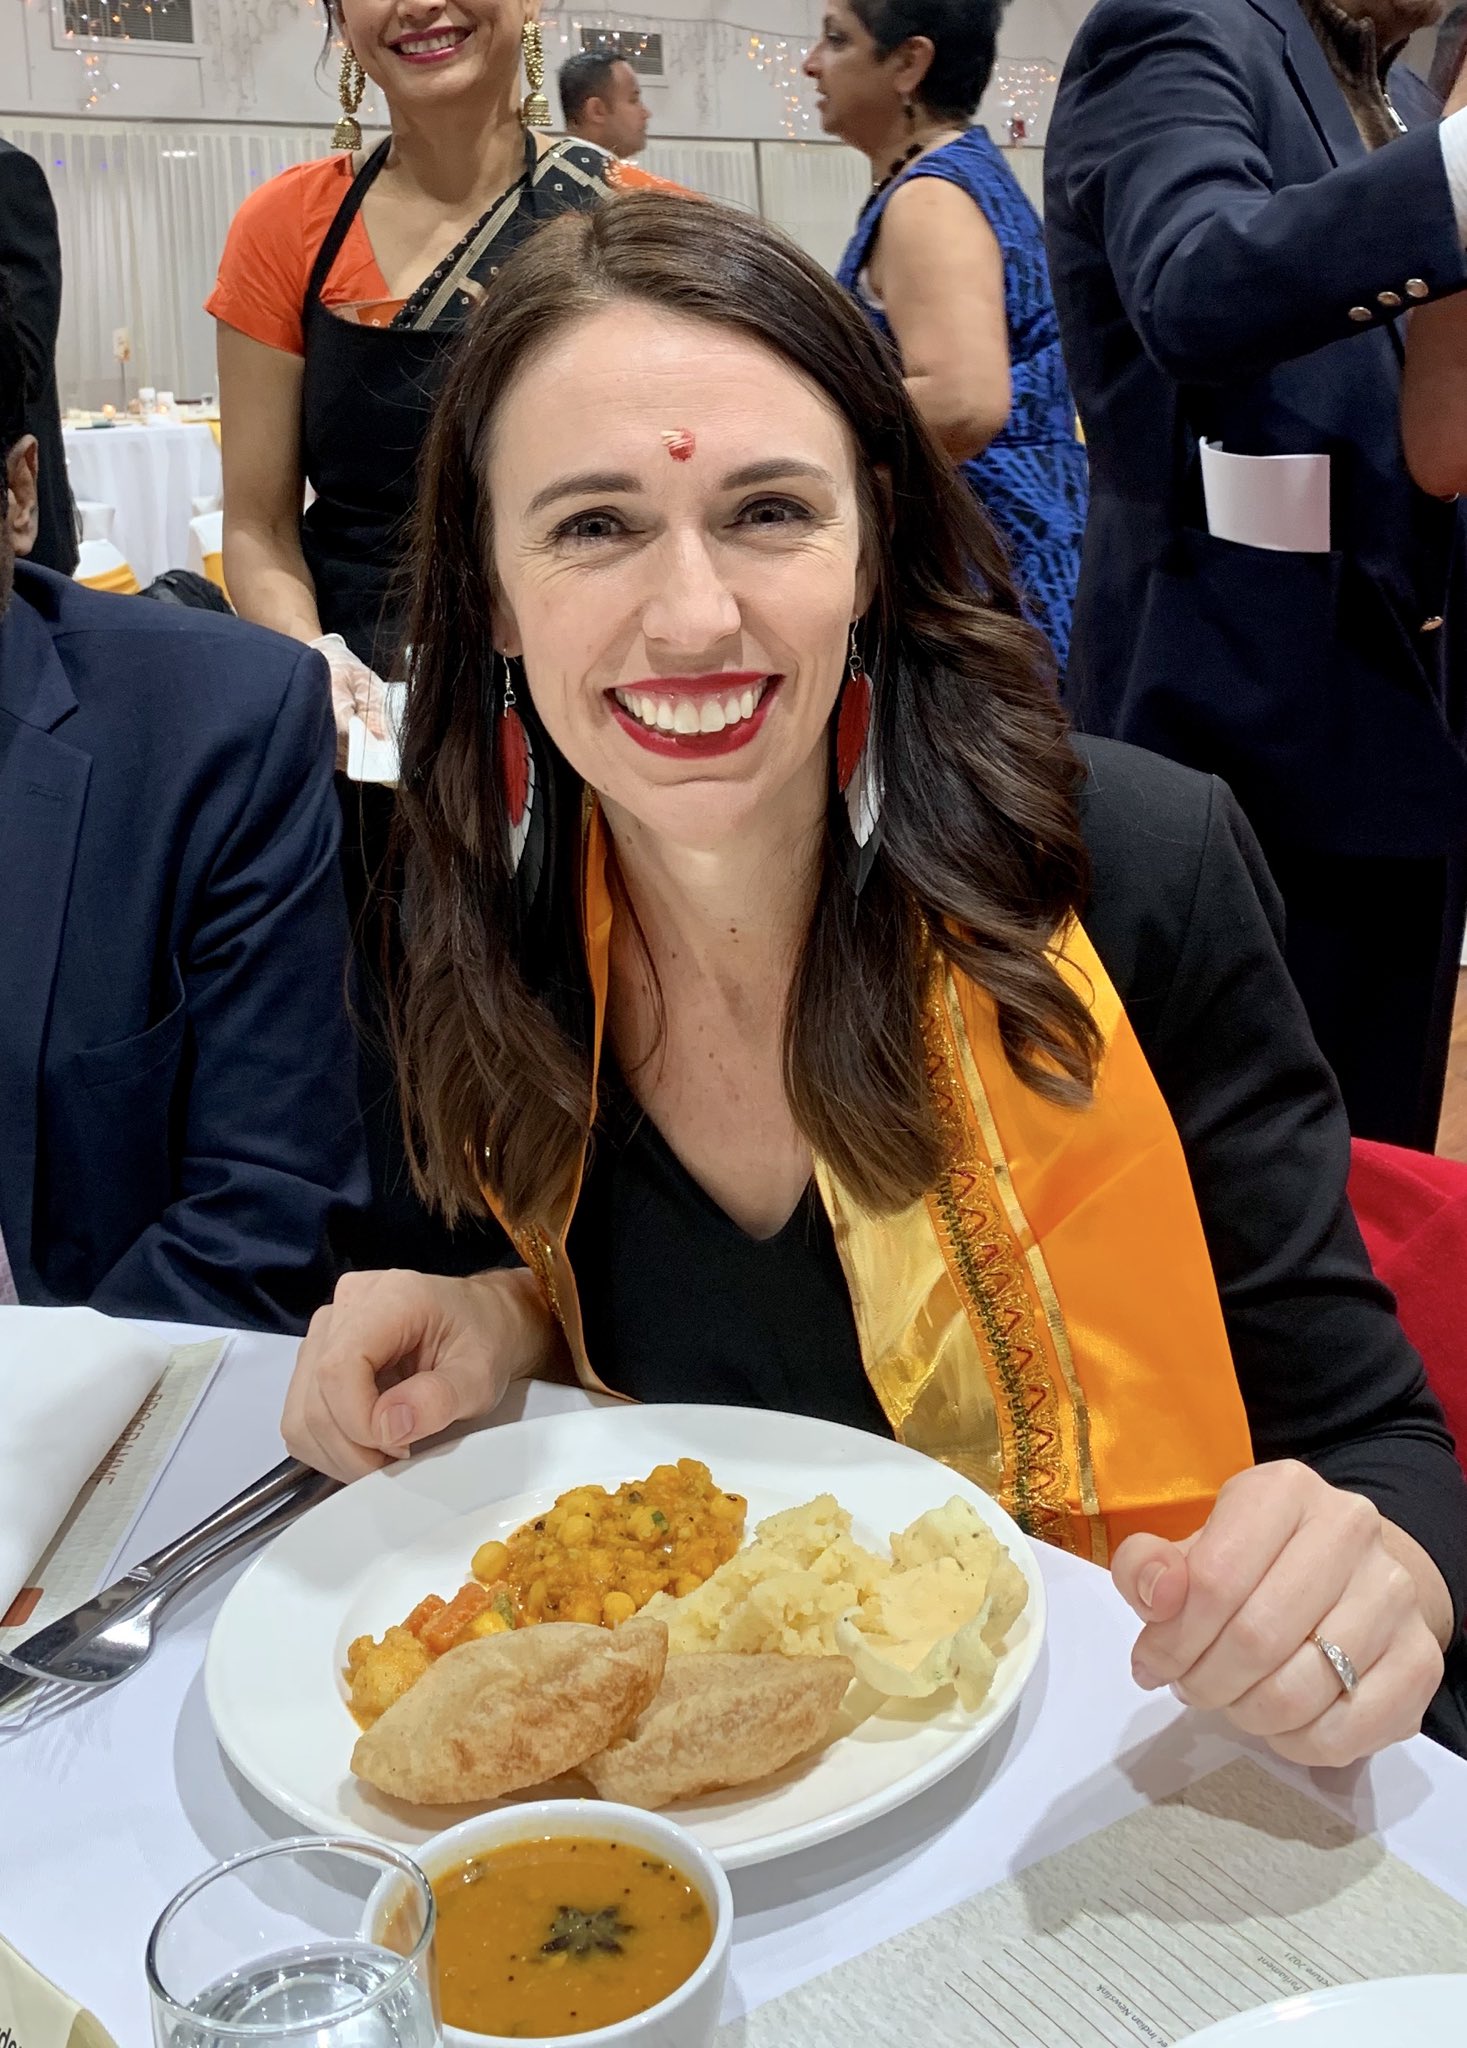 यावेळी पंतप्रधान जसिंडा यांनी खास भारतीय पद्धतीच्या शाकाहारी जेवणाचा आस्वाद घेतल्याचे मुक्तेश परदेशींनी आपल्या ट्विटमध्ये म्हटलं आहे. पुरी, छोले आणि डाळ अशा महाप्रसादाचा लाभ पंतप्रधानांनी घेतला. (फोटो: Twitter/MukteshPardeshi)